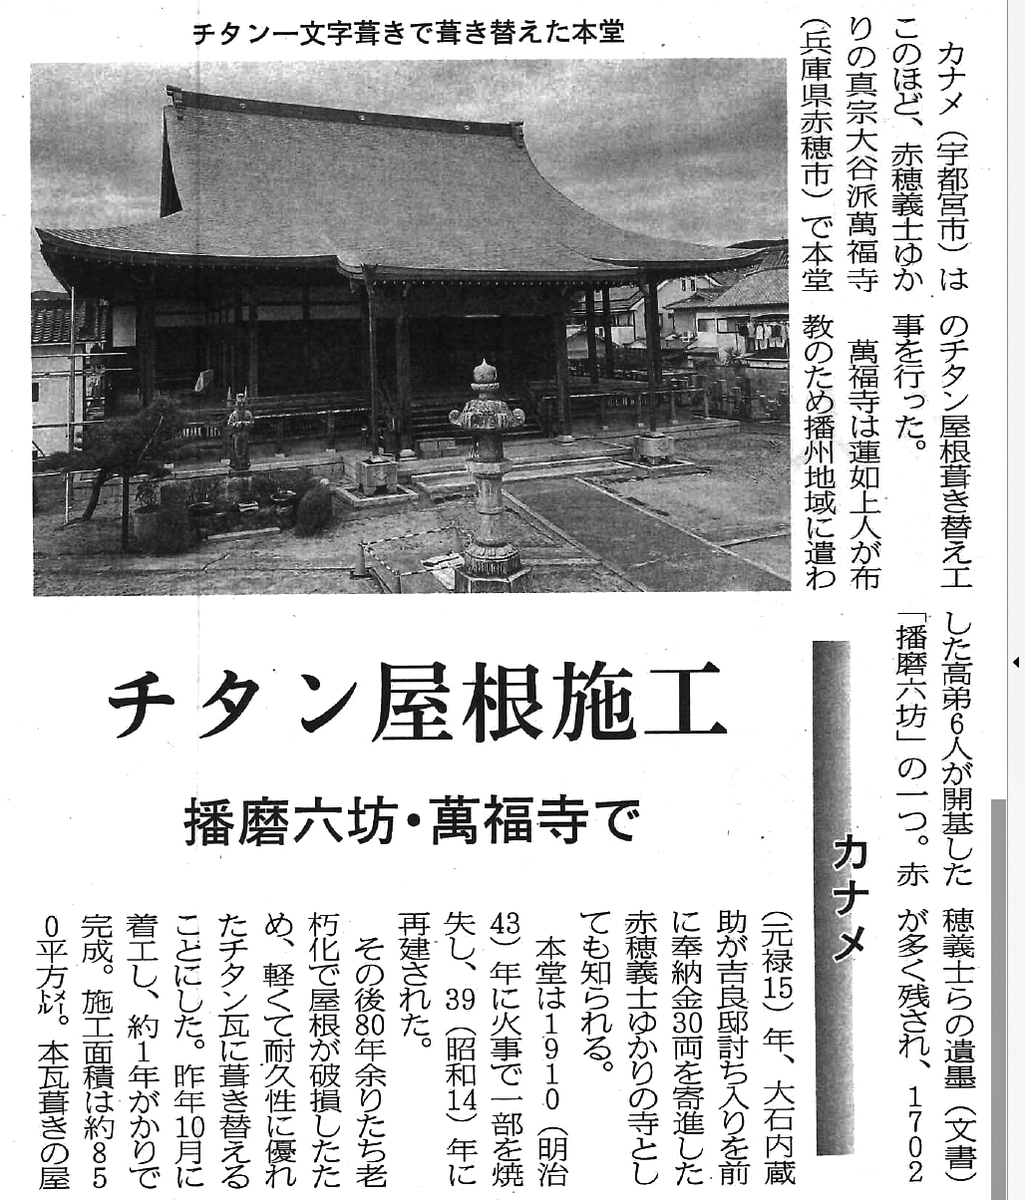 中外日報に「チタン カナメ一文字葺き」の工事事例が掲載されました。